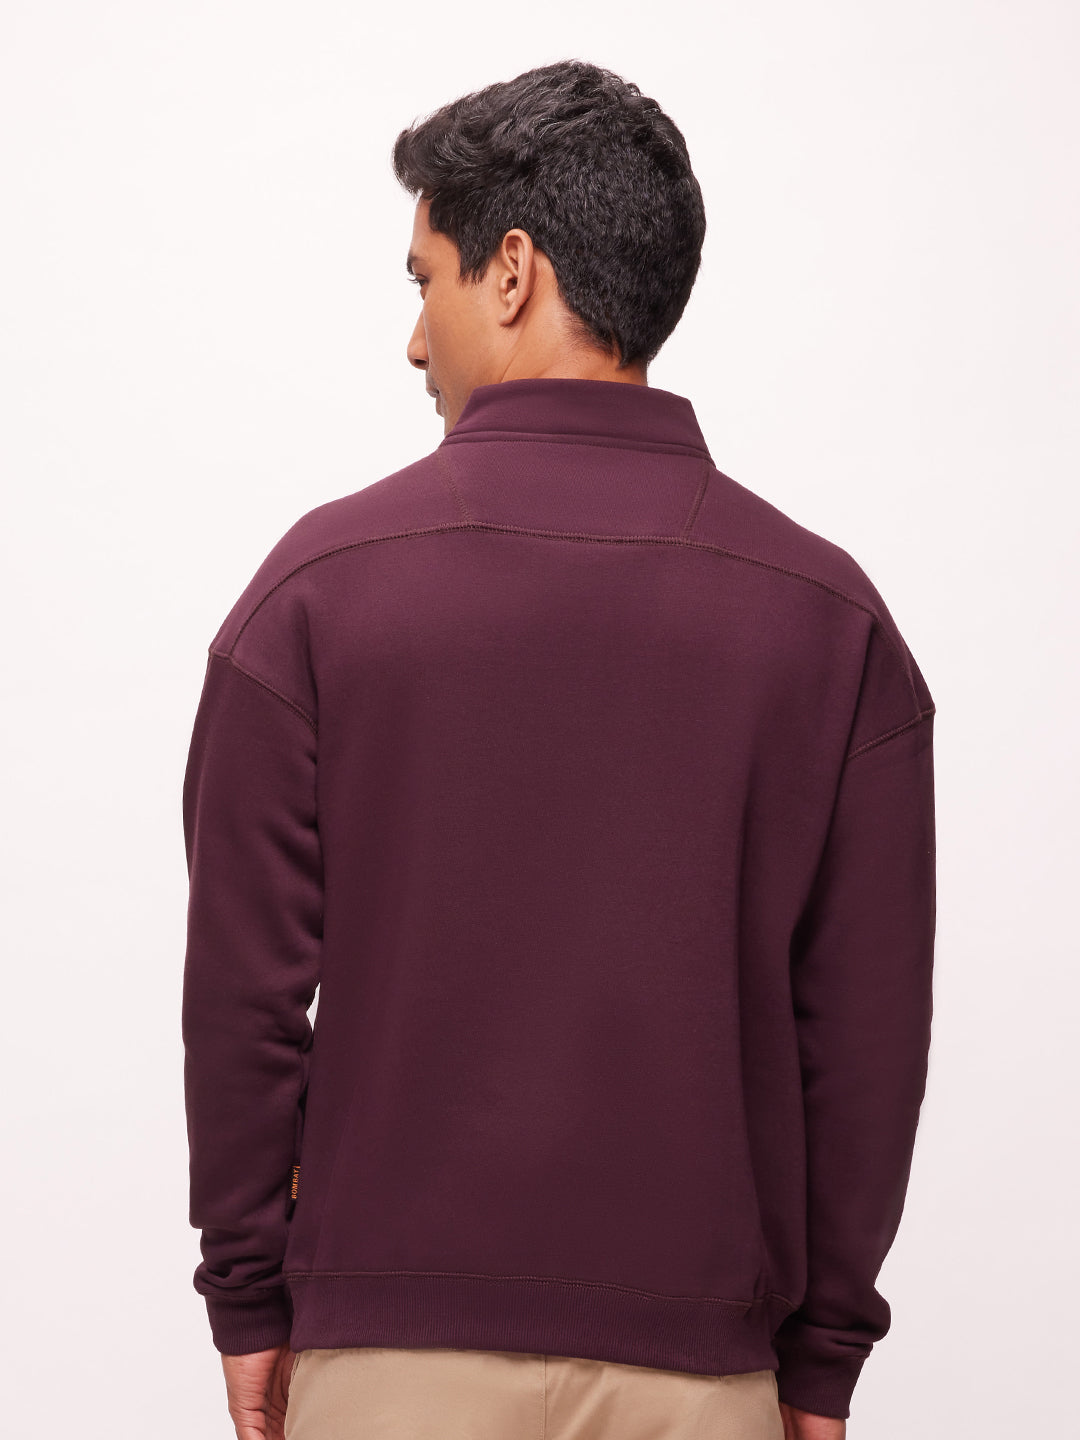 Bombay High Men's Solid Maroon Half Zip Knit Sweatshirt